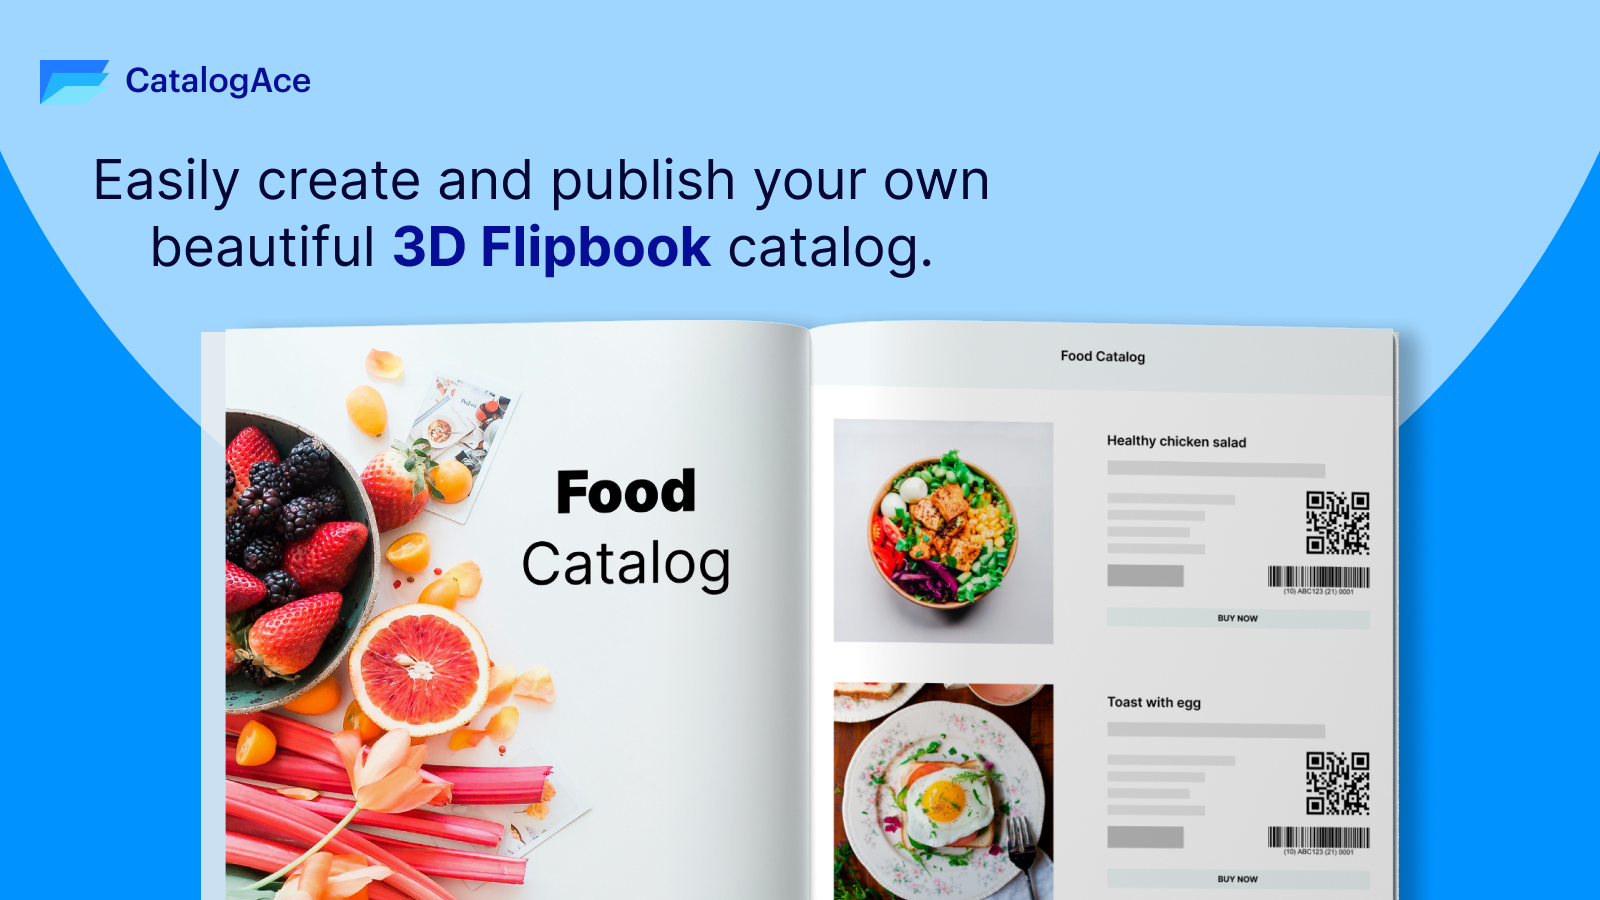 Opret nemt og offentliggør din egen smukke 3D Flipbook